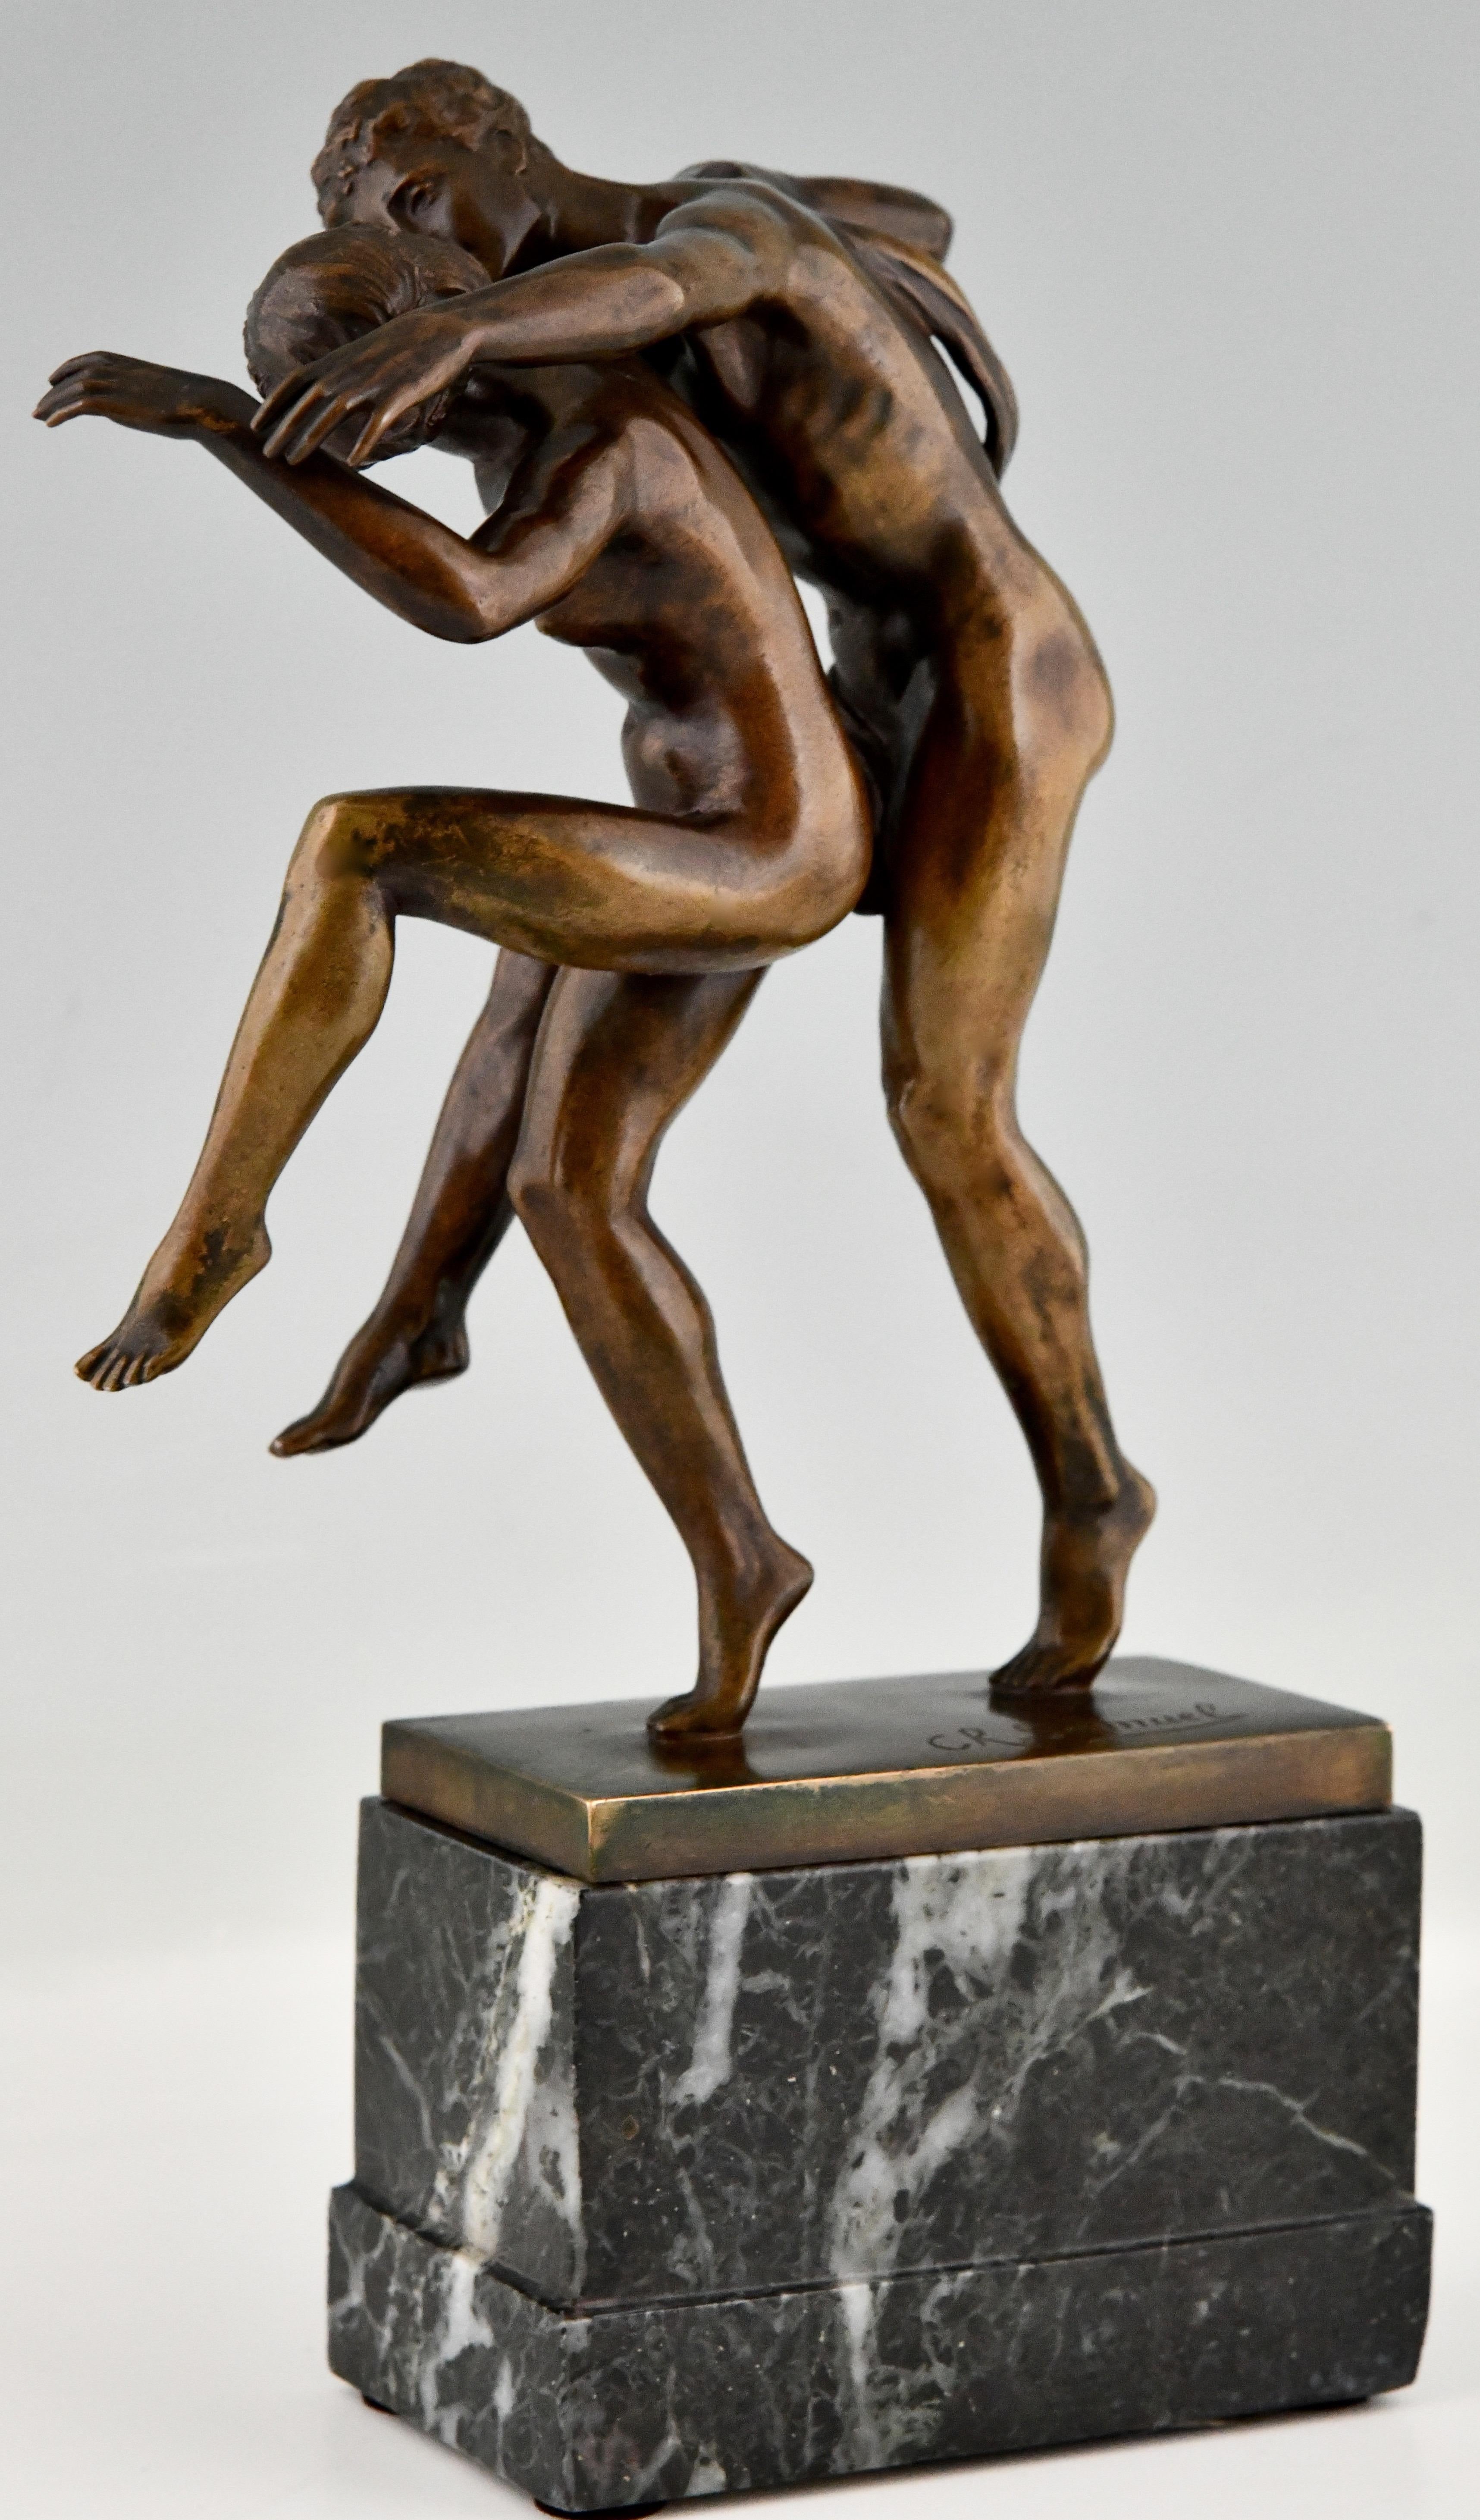 Early 20th Century Art Nouveau Bronze Sculpture Dancing Nude Couple La Danse by Charles Samuel For Sale